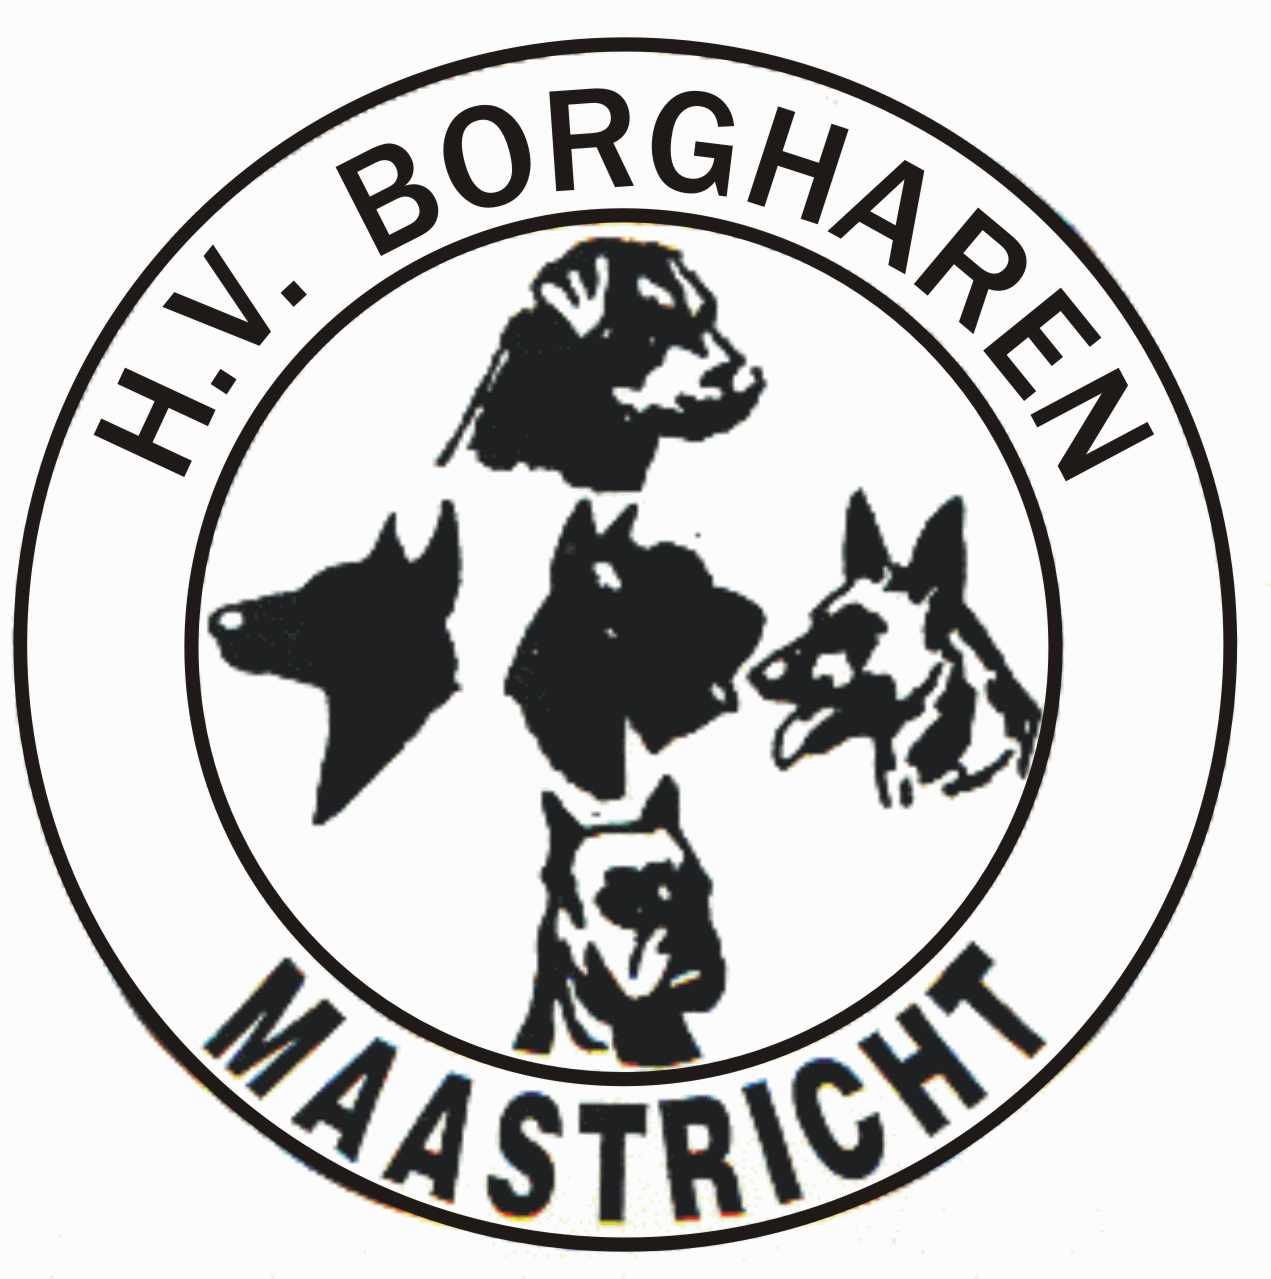 NBG Borgharen Maastrichtse Drielanden Bokaal 26 en 27 juni 2010 te Maastricht Georganiseerd door NBG vereniging Borgharen i.s.m. de K9 Group.